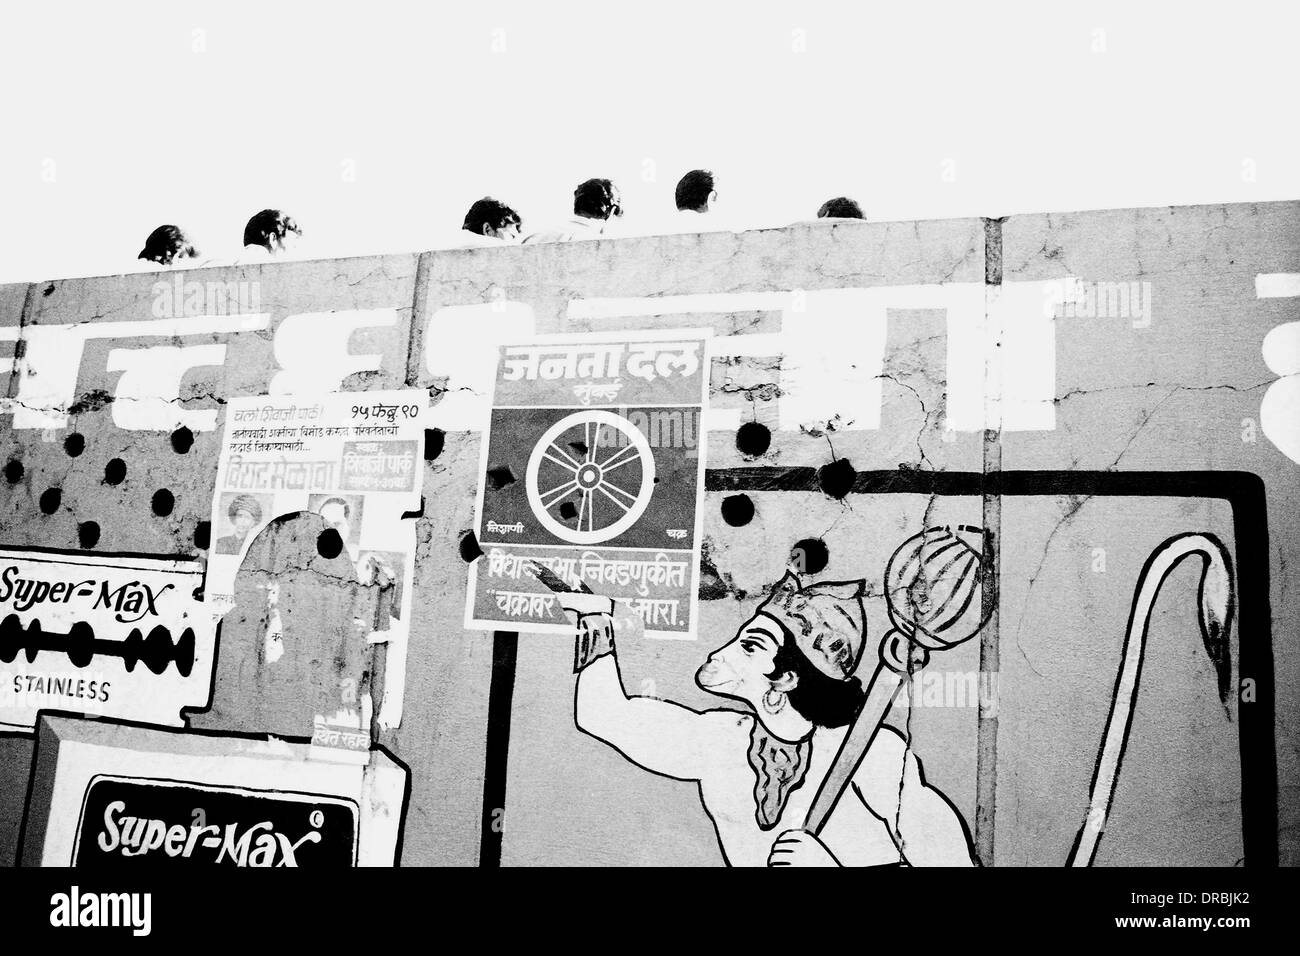 Seigneur Hanuman peints sur le mur avec des affiches, Mumbai, Maharashtra, Inde, 1990 Banque D'Images